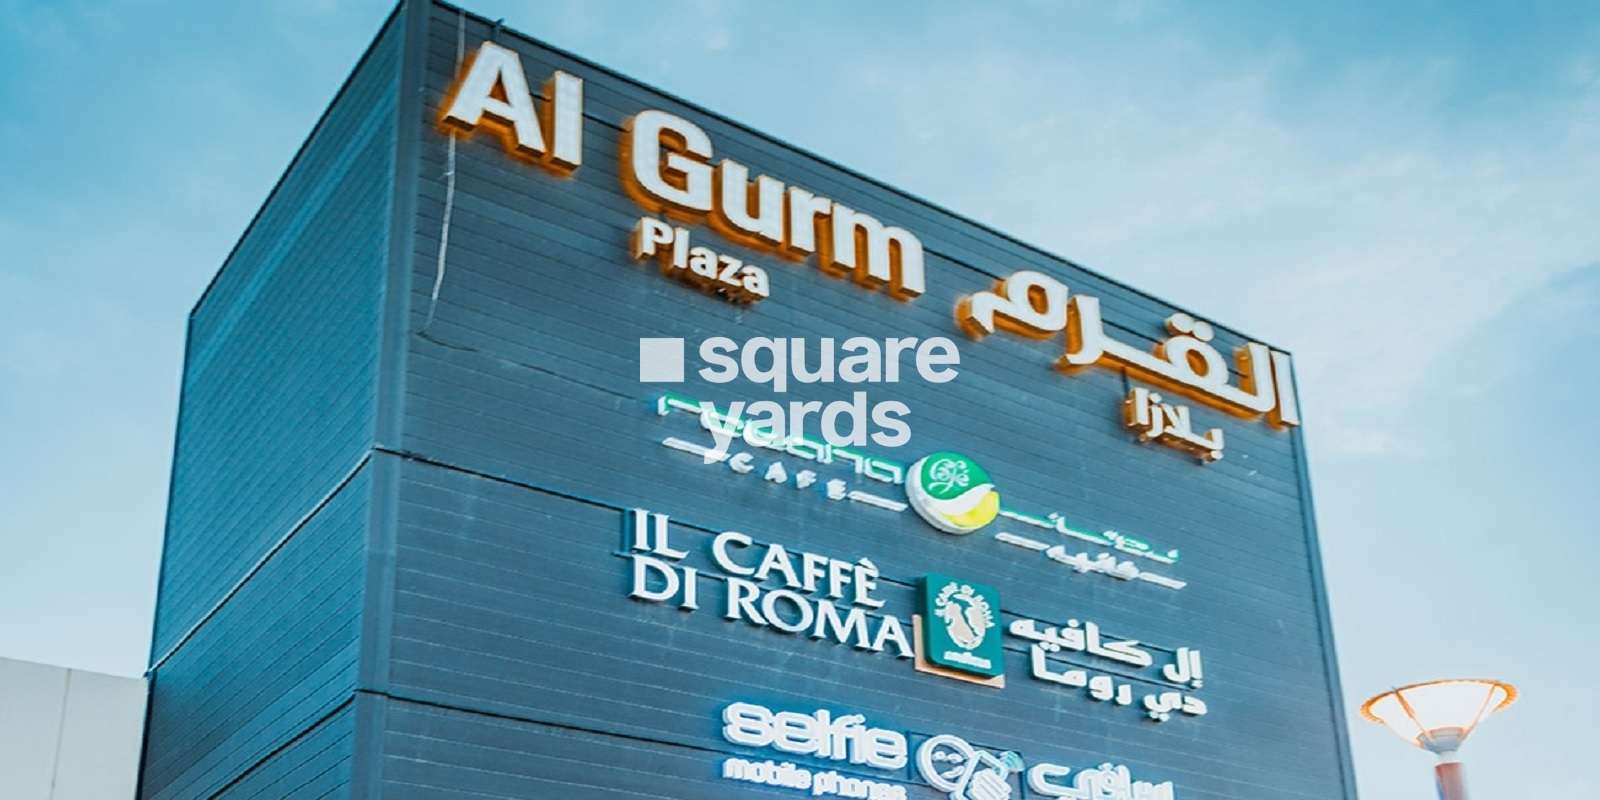 Al Gurm Plaza Cover Image